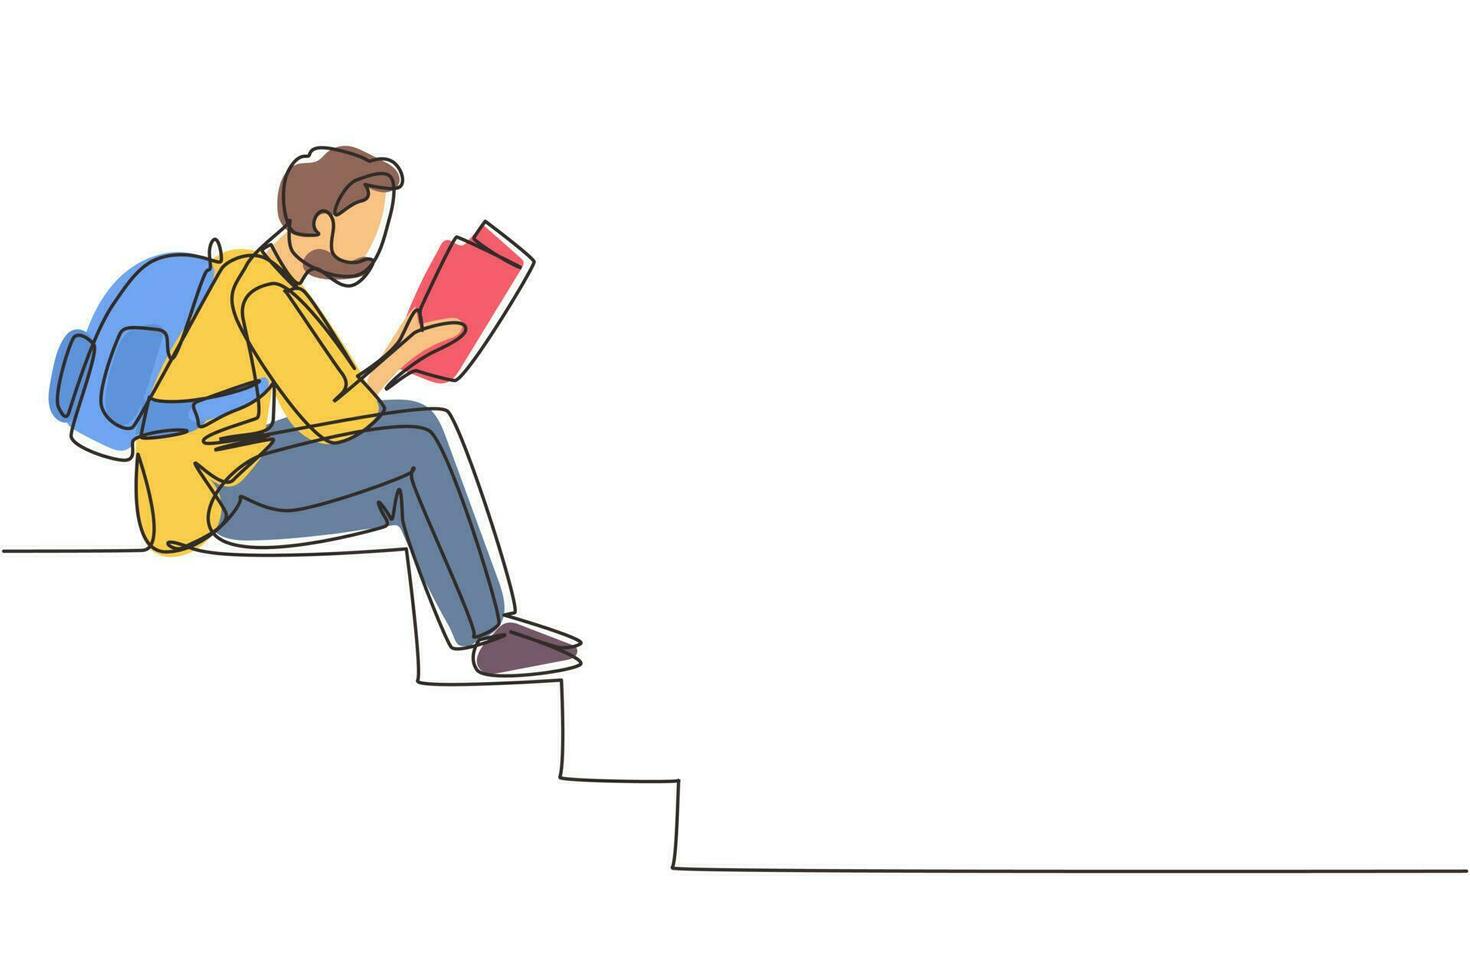 dessin en ligne continue simple jeune homme arabe moderne lisant un livre assis dans les escaliers. lecteur masculin intelligent appréciant la littérature ou étudiant, se préparant à l'examen. une ligne dessiner illustration vectorielle de conception vecteur